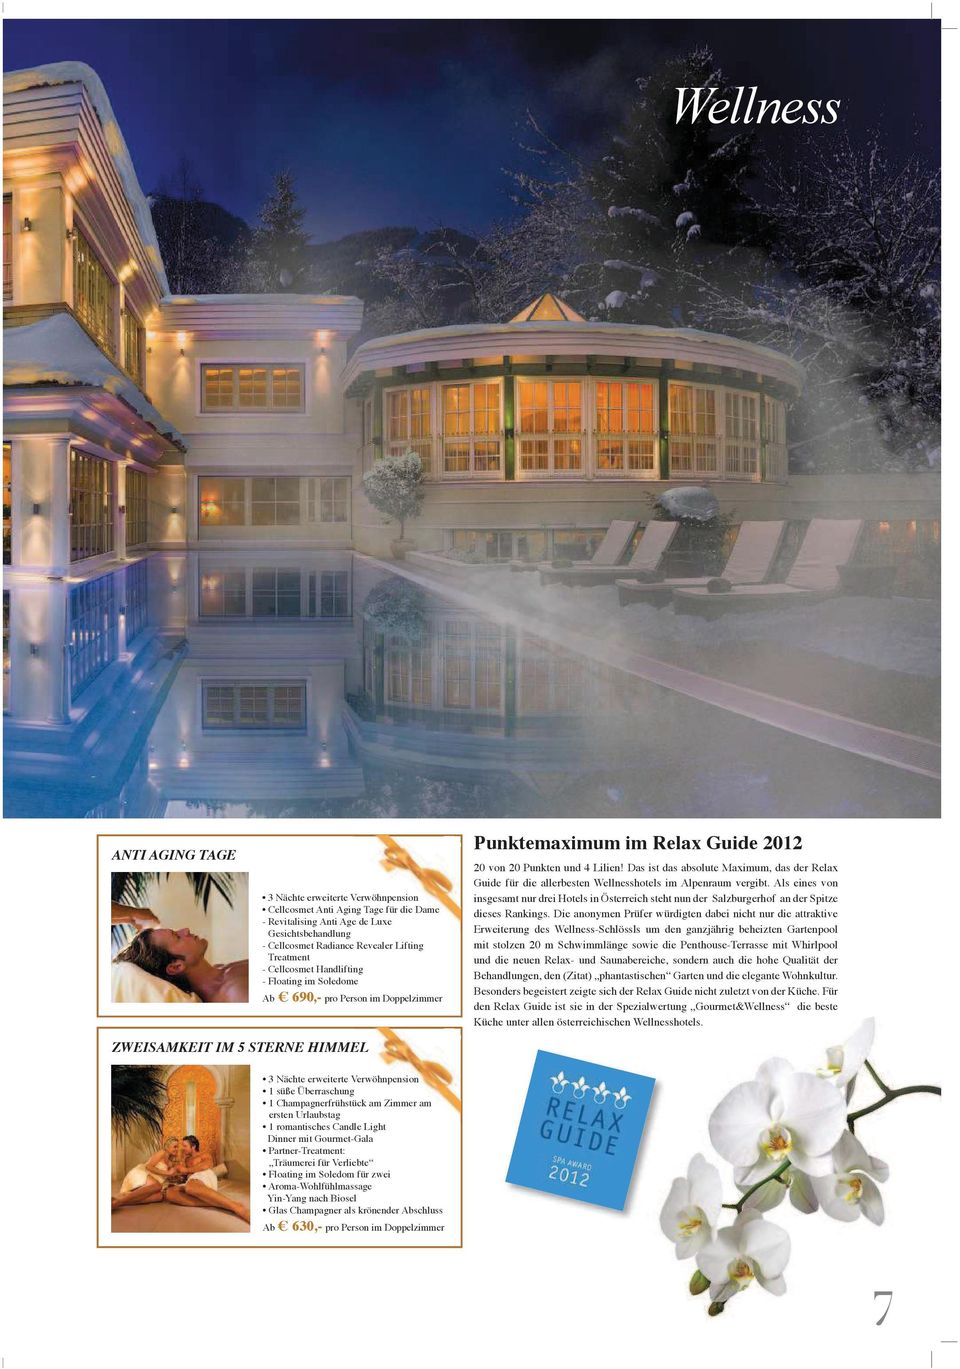 DasistdasabsoluteMaximum,dasderRelax Guide für die allerbesten Wellnesshotels im Alpenraum vergibt.